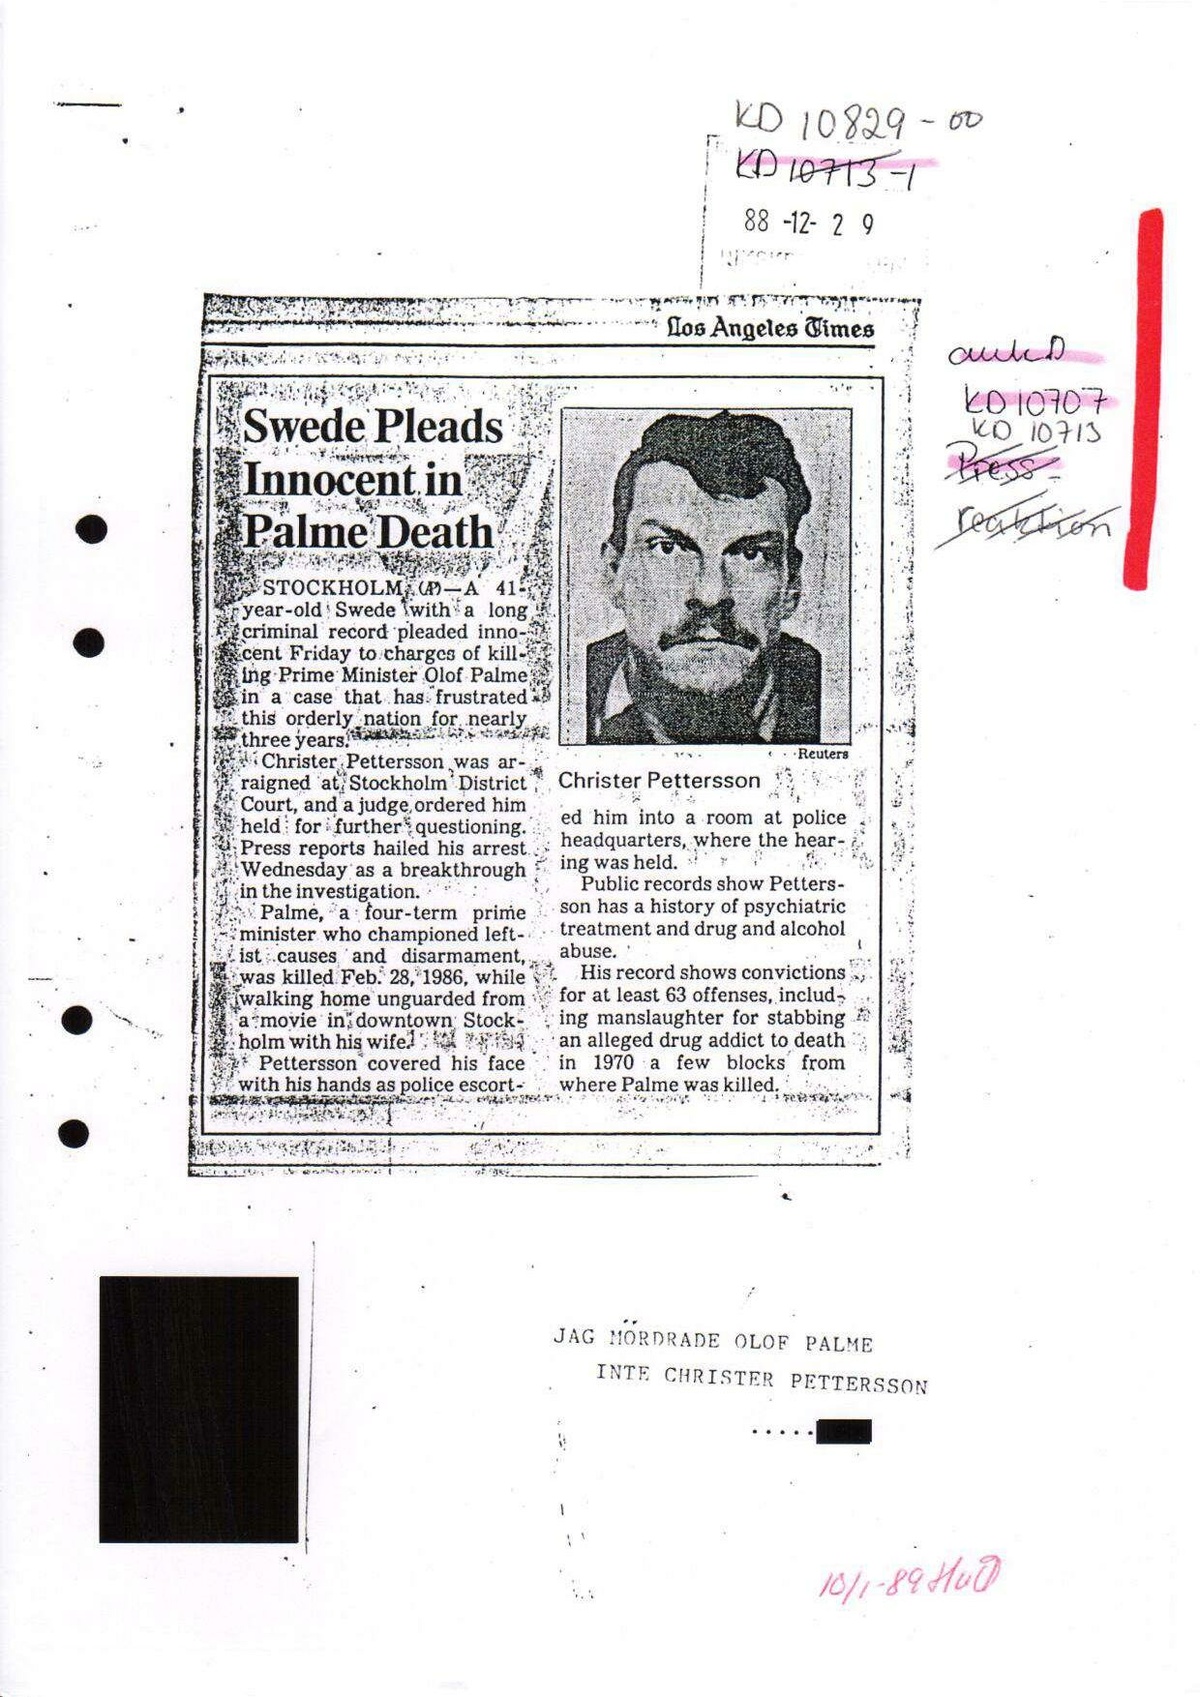 Pol-1988-12-29 KD10829-00 Erkännanden Palmemordet.pdf